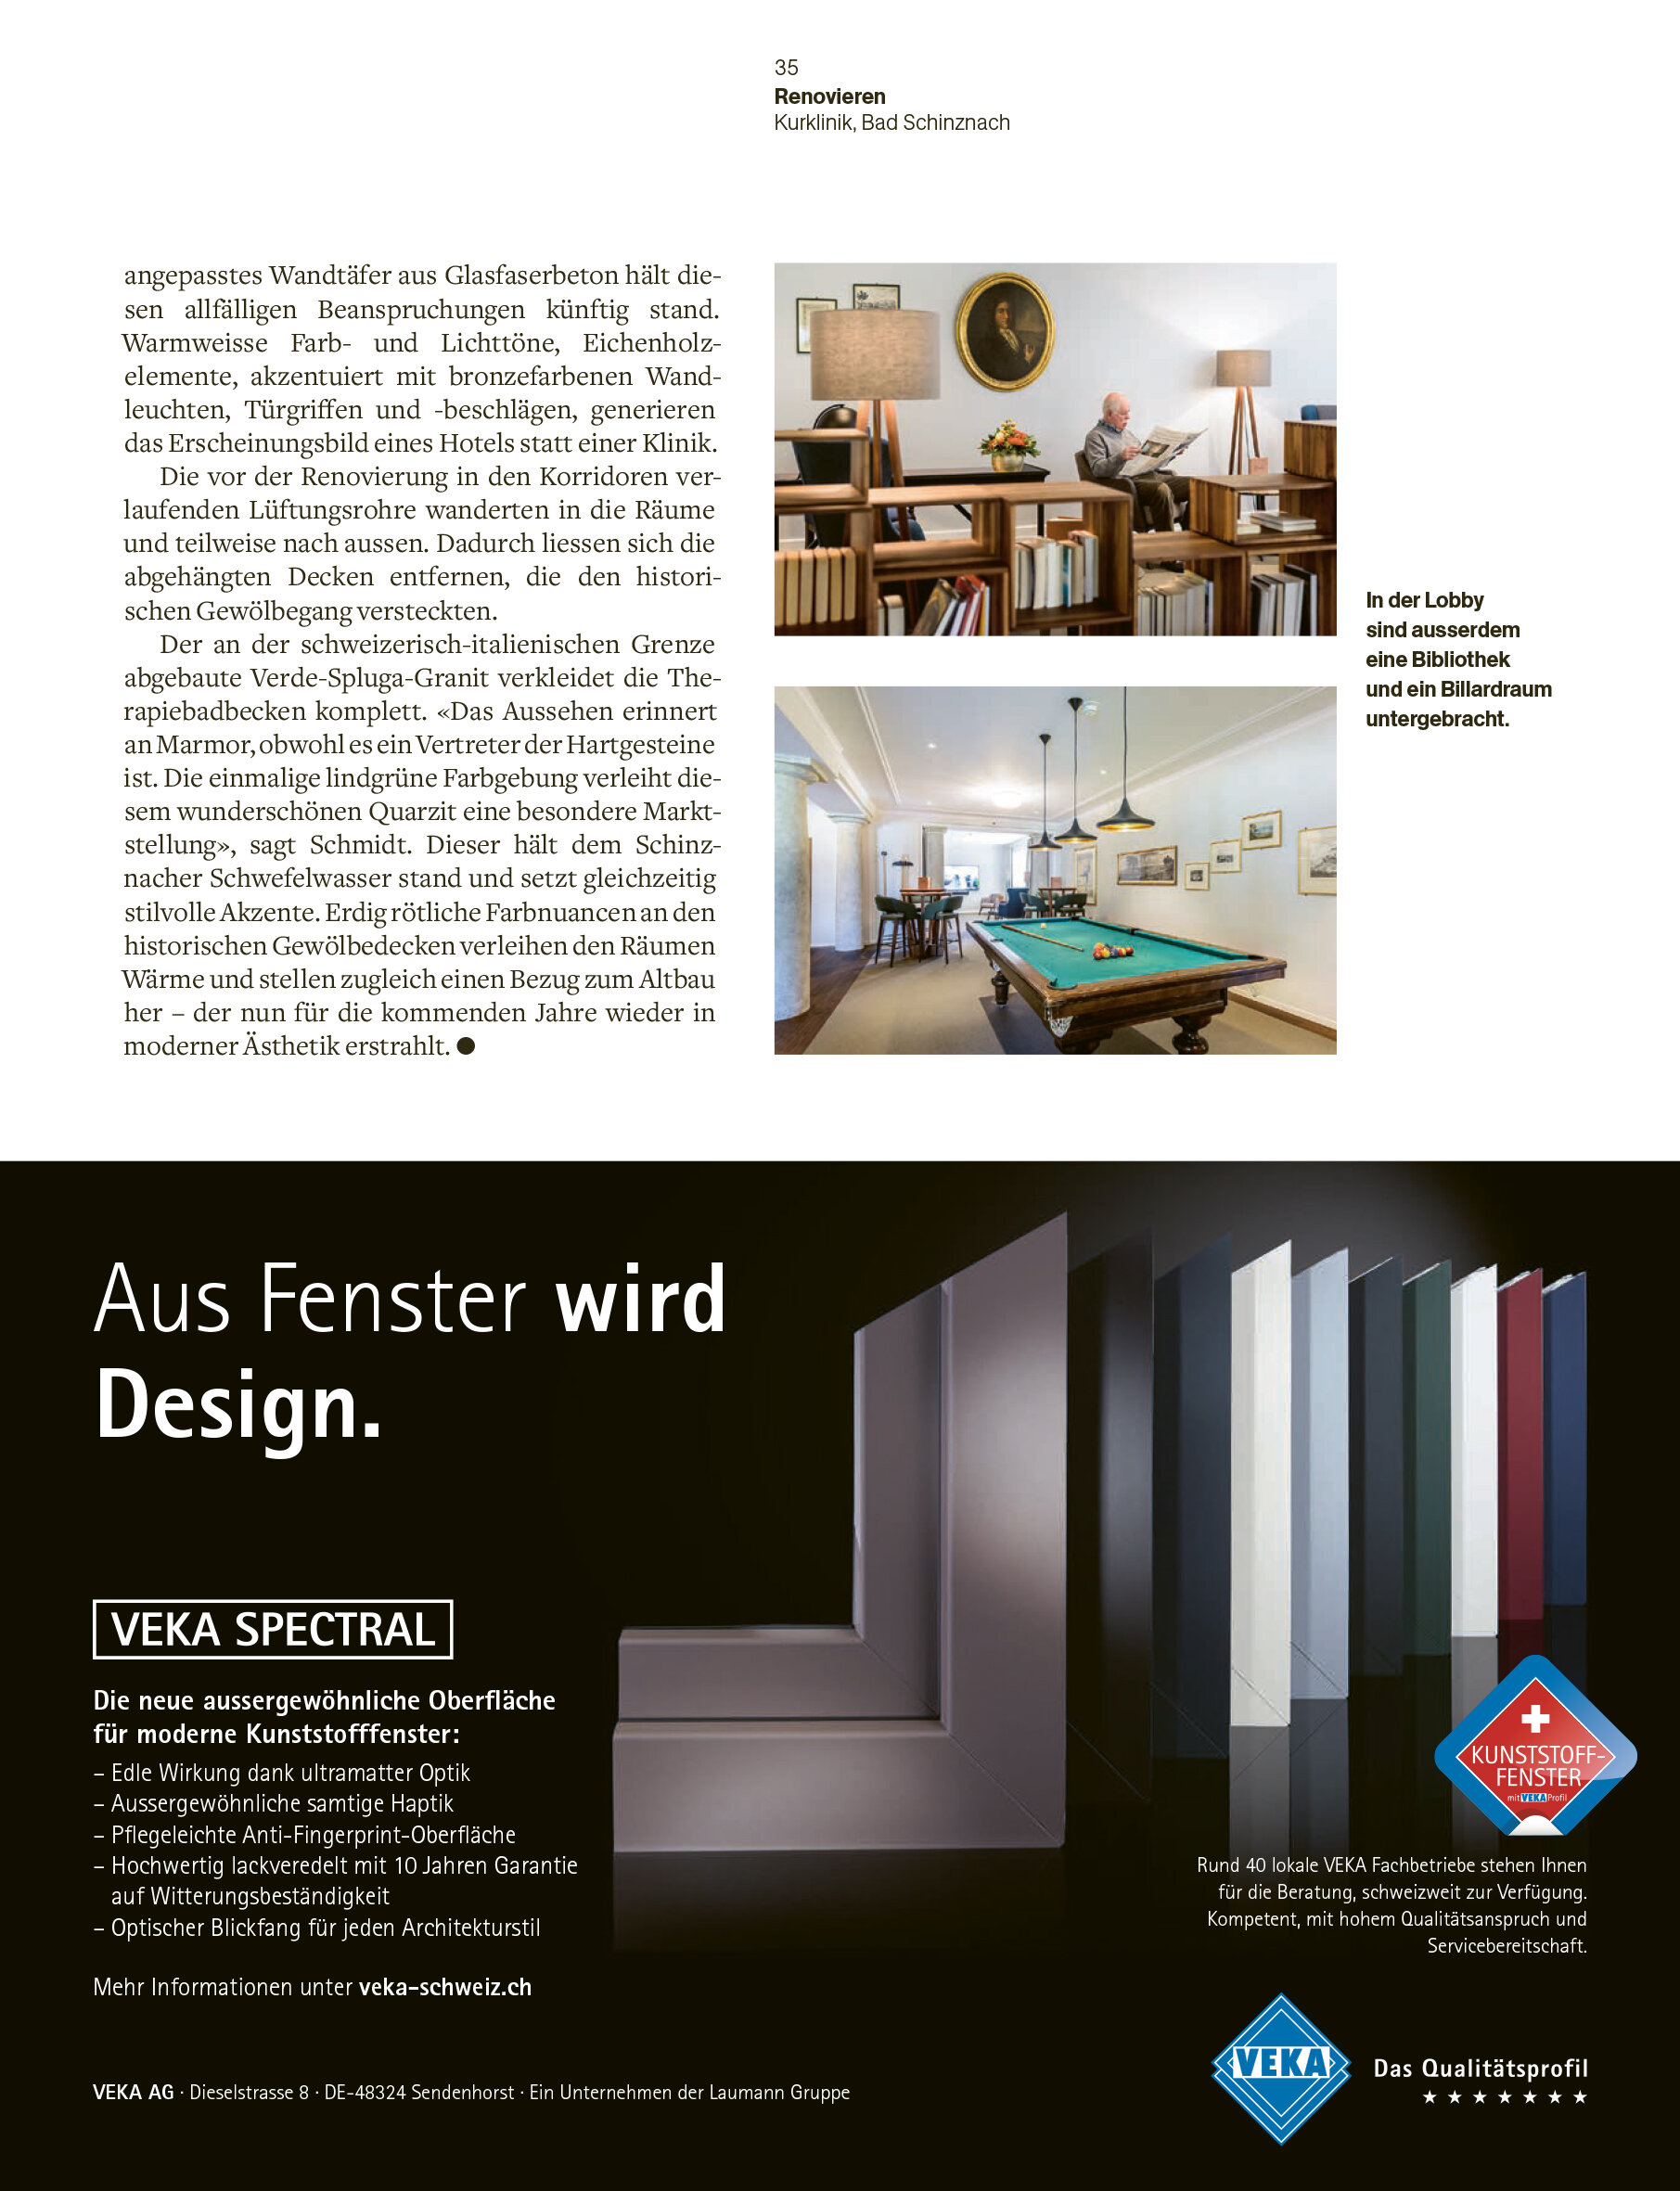 IDA14_Karsten-Schmidt_Kurhotel_Genesung-im-historischen-Umfeld_Architektur-und-Technik-Magazin-4.jpg